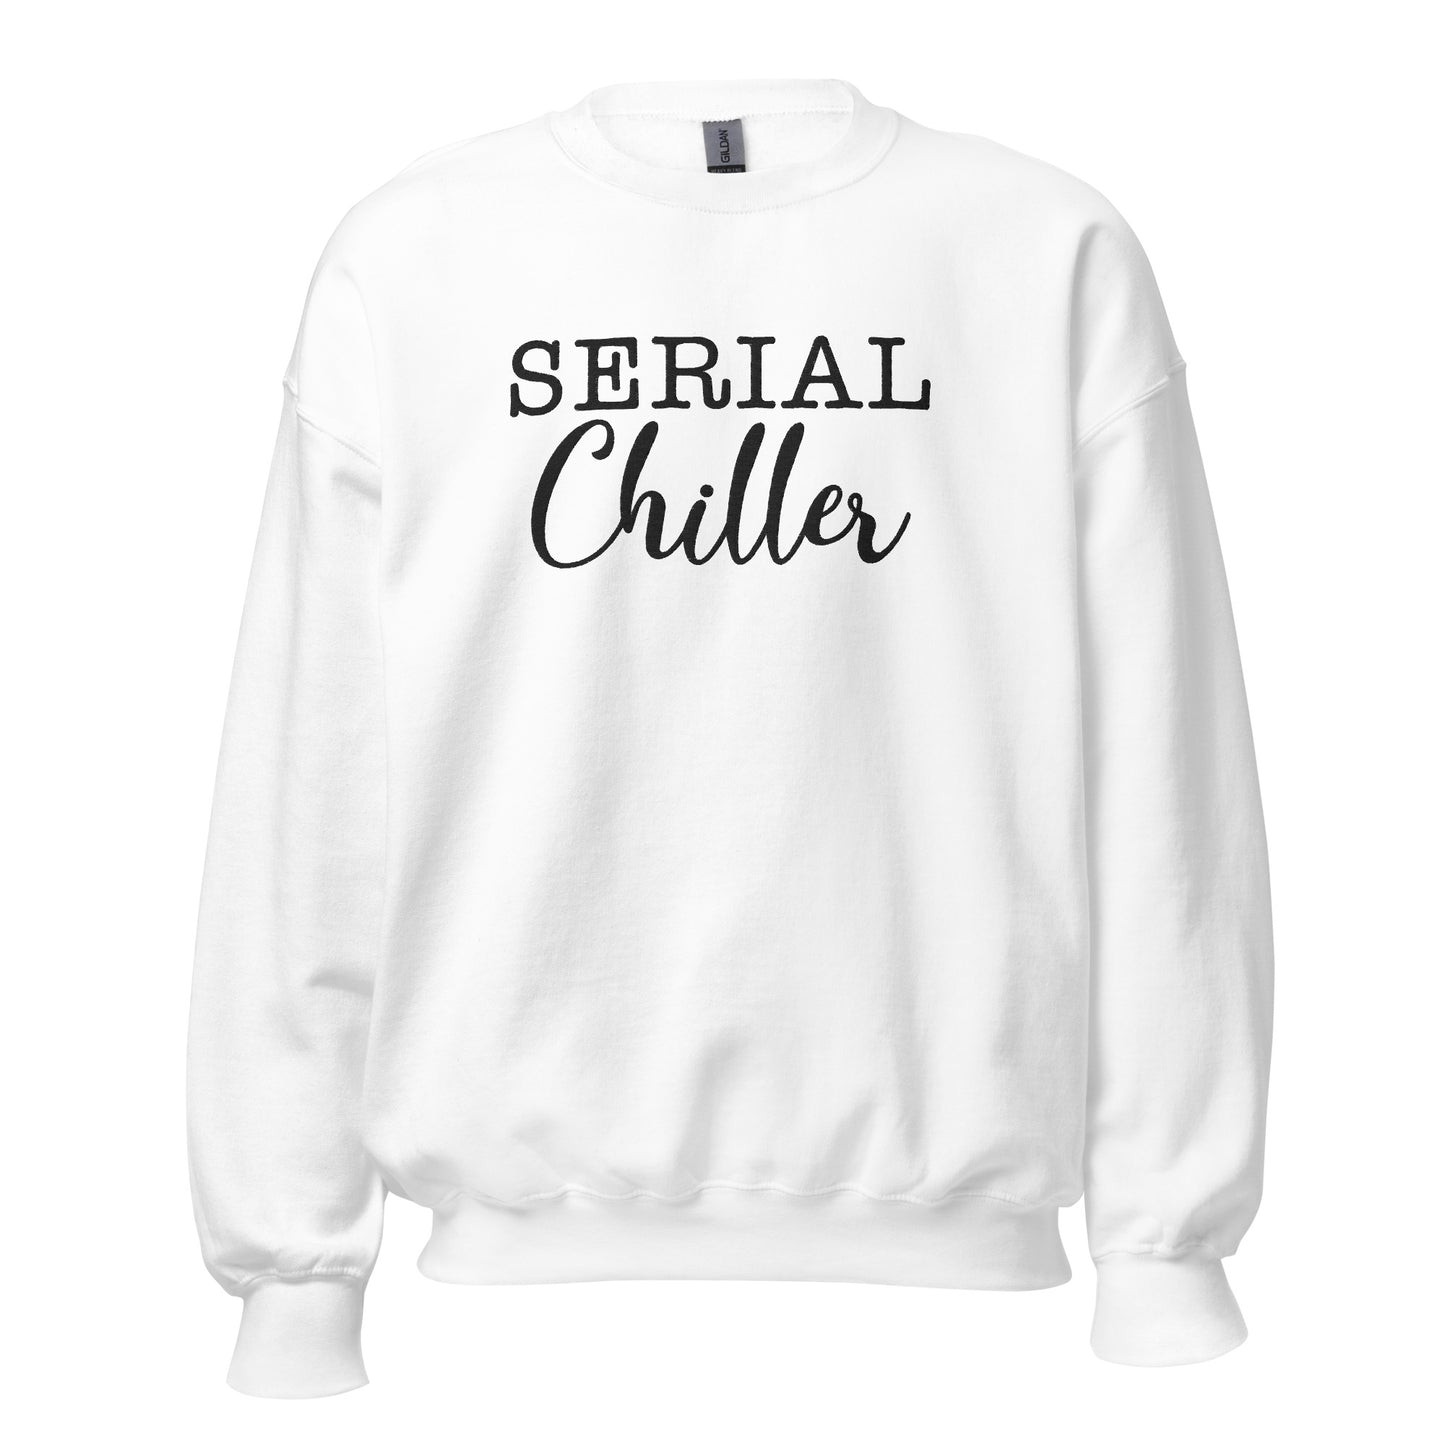 Brodert Serial Chiller Sweatshirt